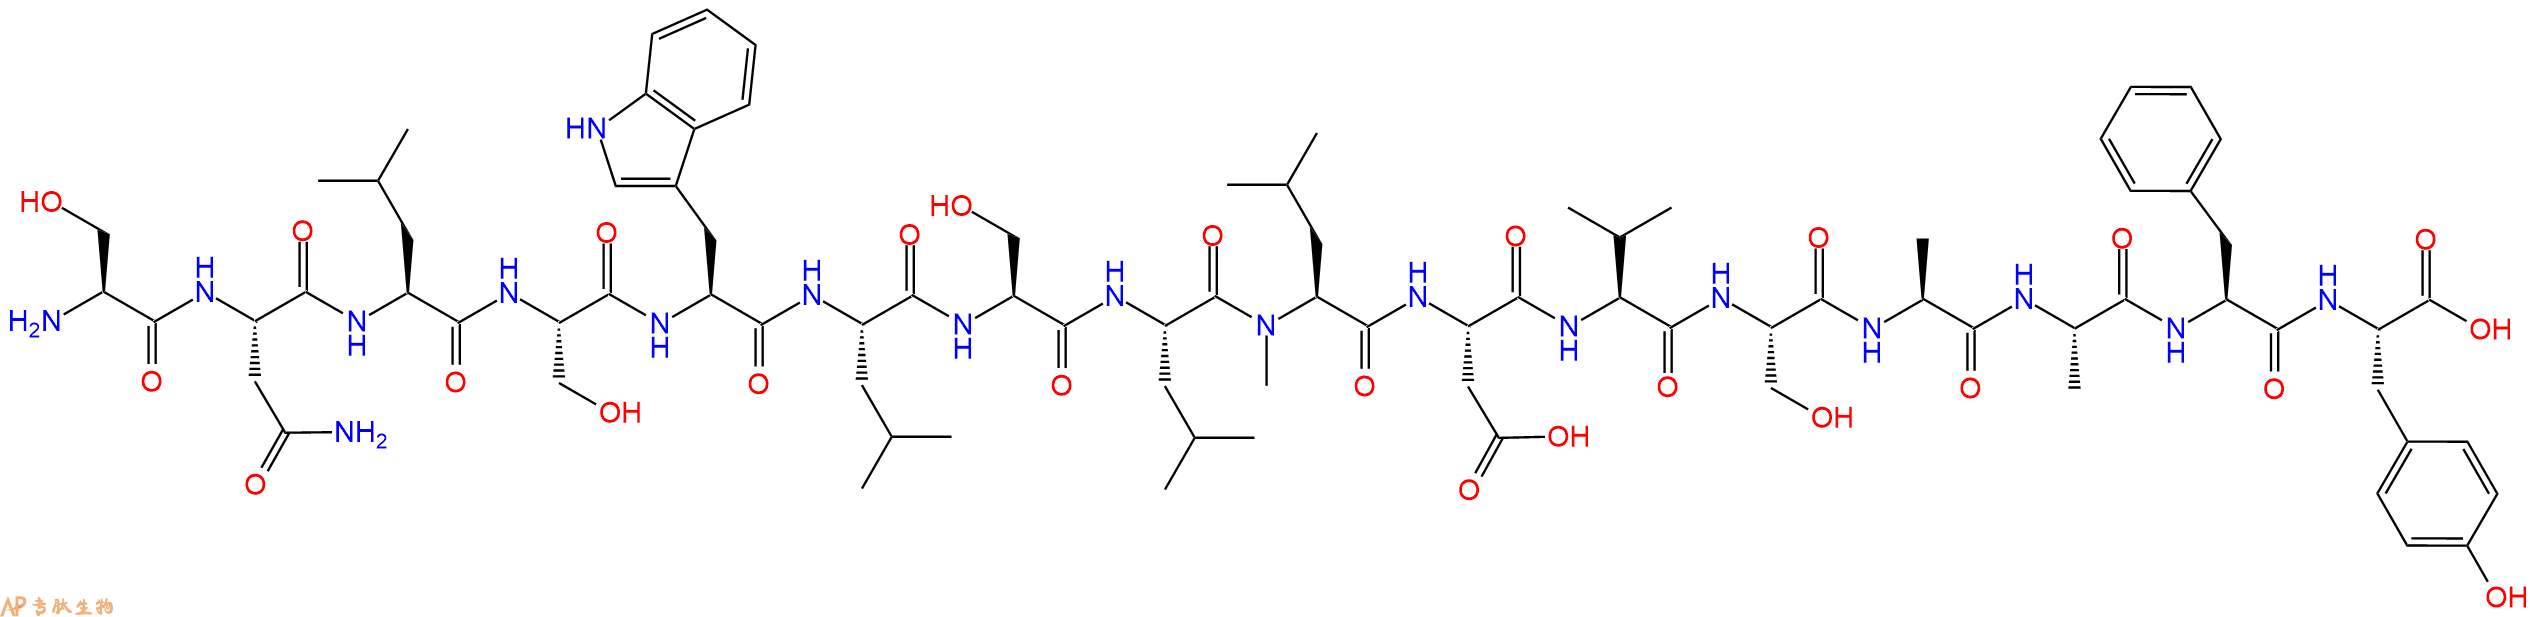 专肽生物产品H2N-Ser-Asn-Leu-Ser-Trp-Leu-Ser-Leu-(NMe)Leu-Asp-V